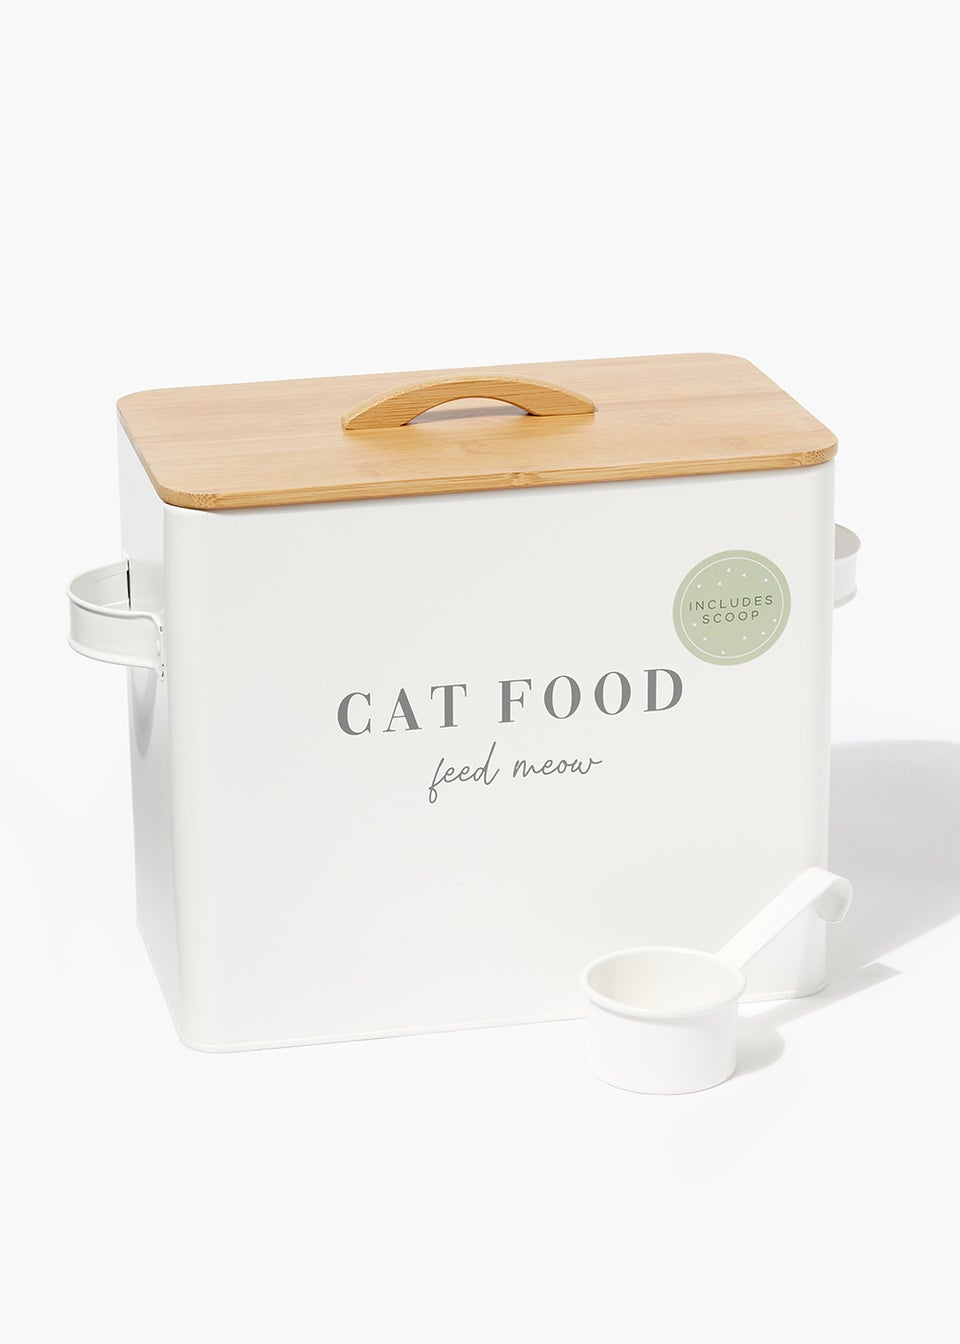 Cat Food Tin & Scoop (22cm x 25.5cm x 15cm)